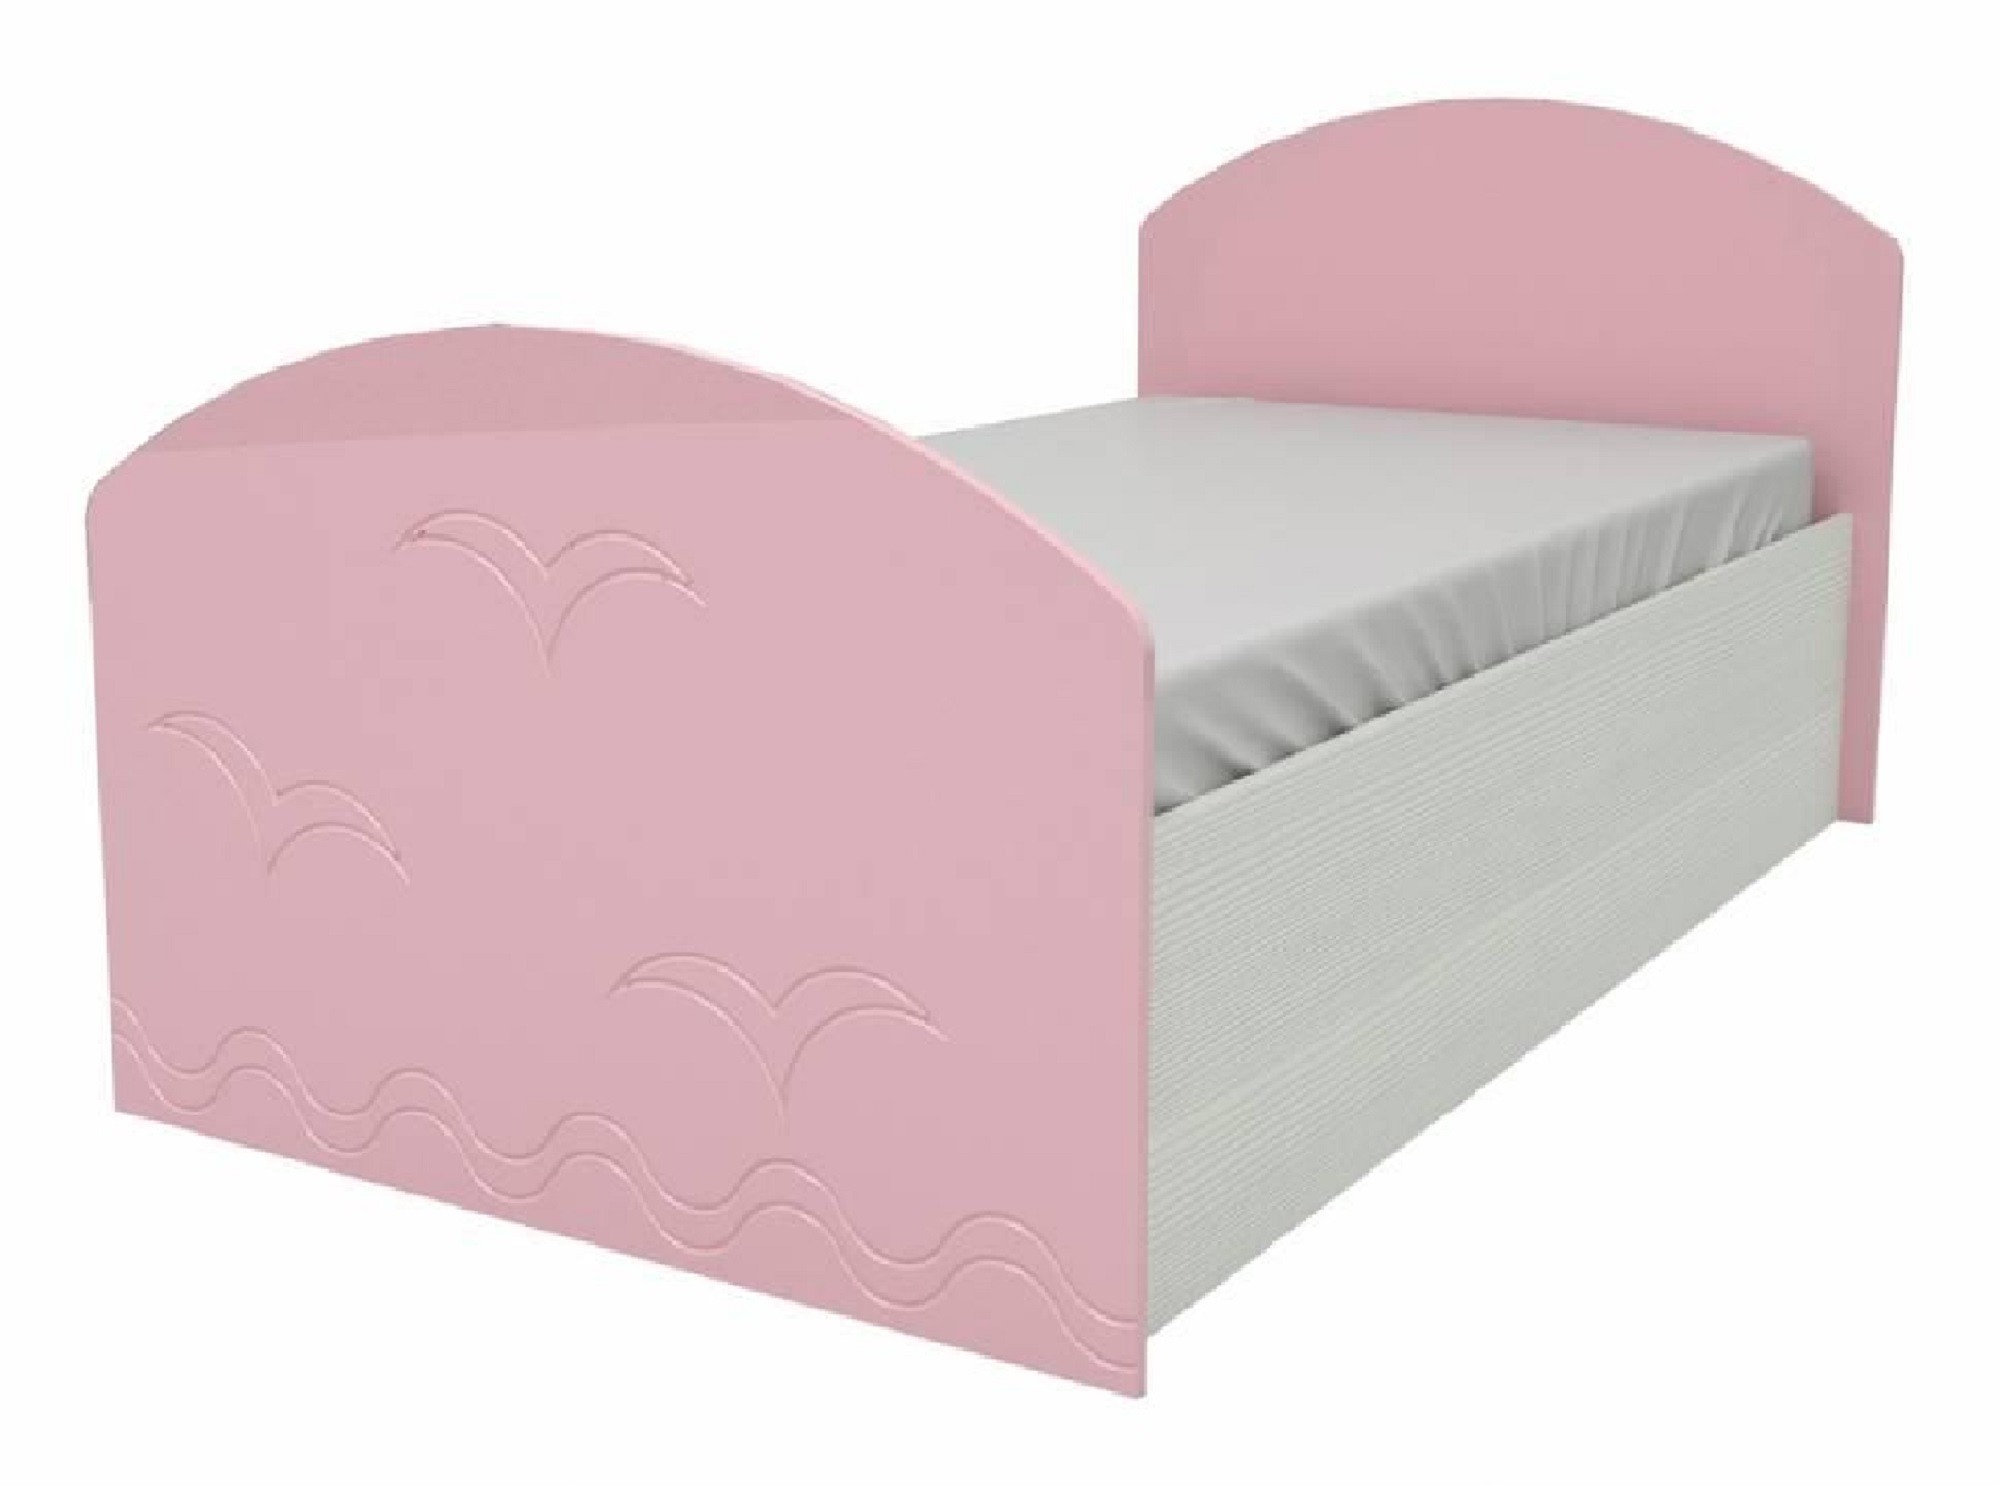 Юниор-2 Детская кровать 80, металлик (Ваниль металлик, Дуб белёный) Ваниль металлик, МДФ, ЛДСП юниор 2 детская кровать 80 металлик розовый металлик дуб белёный дуб белёный мдф лдсп